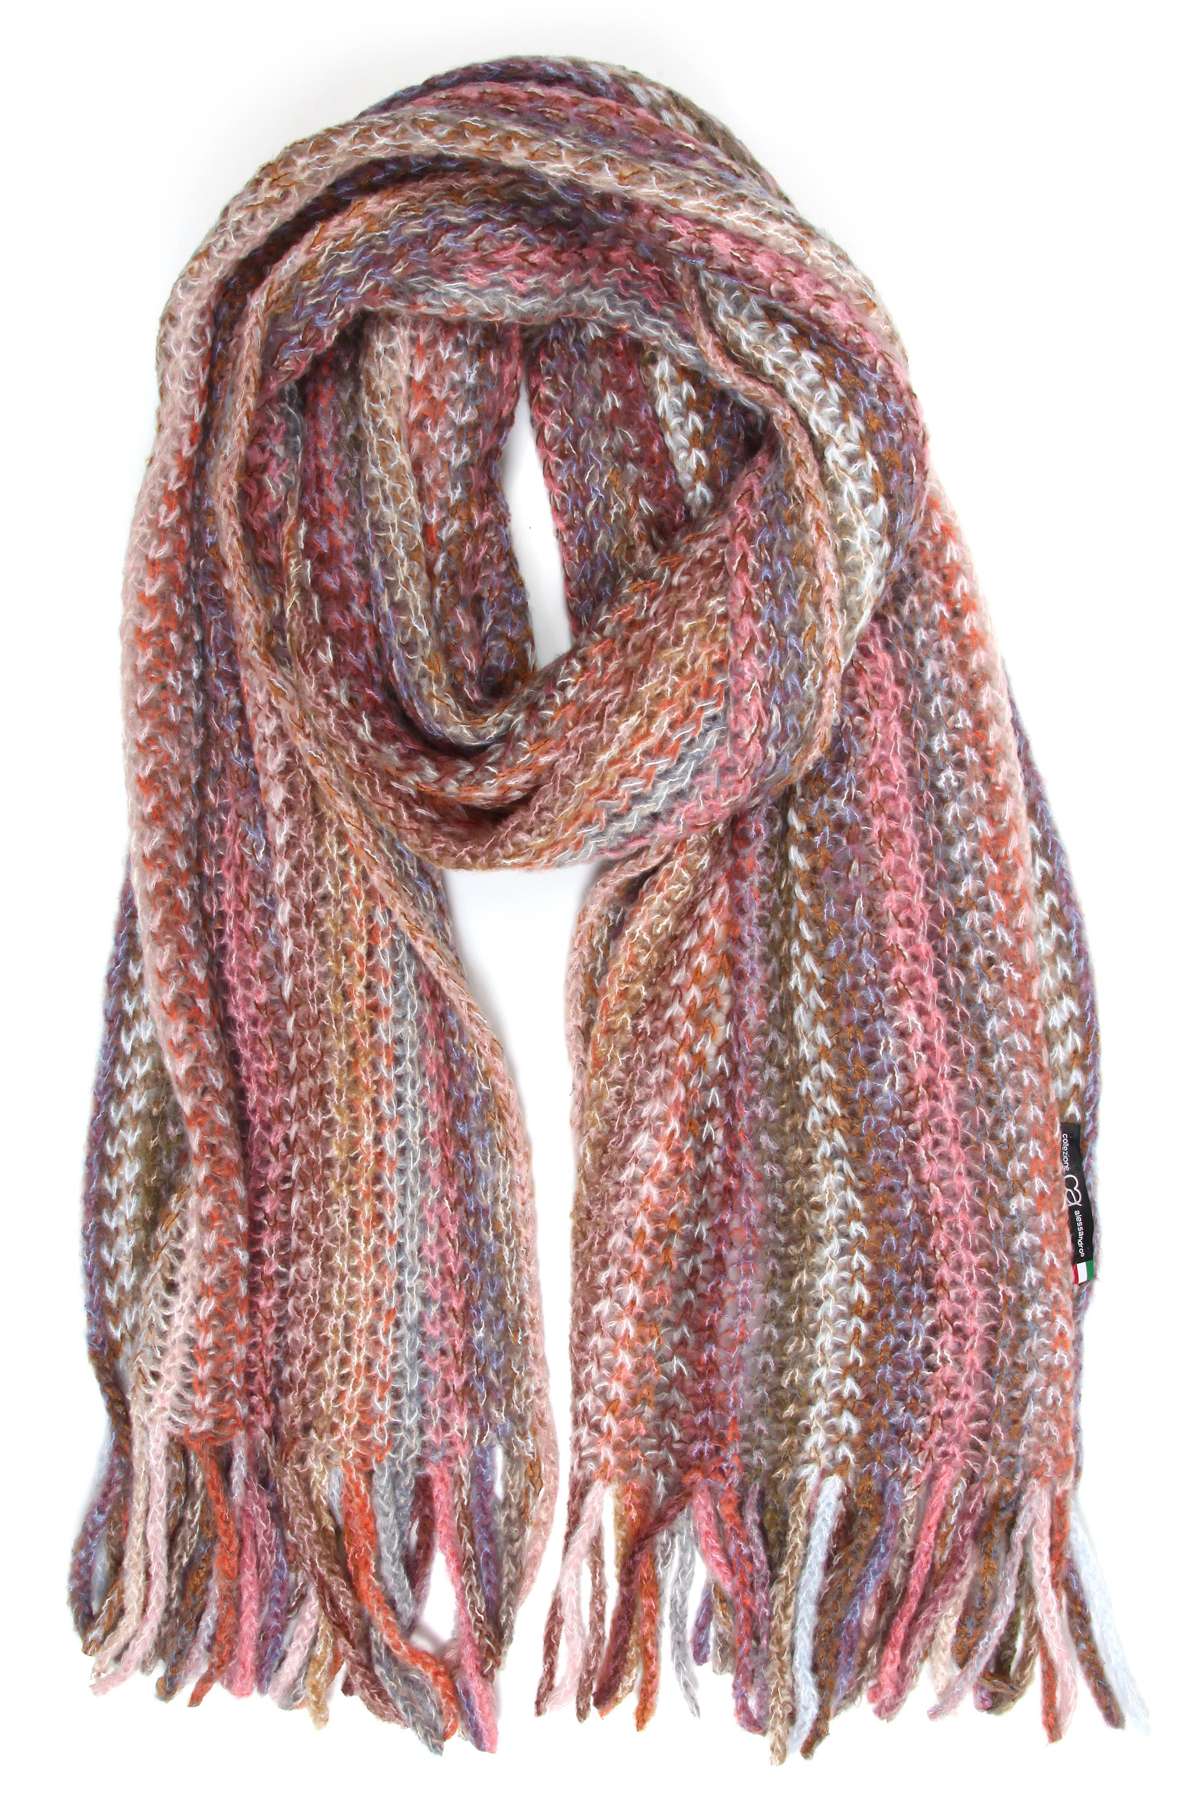 Шерстяной шарф (1 штука), производство Италия.